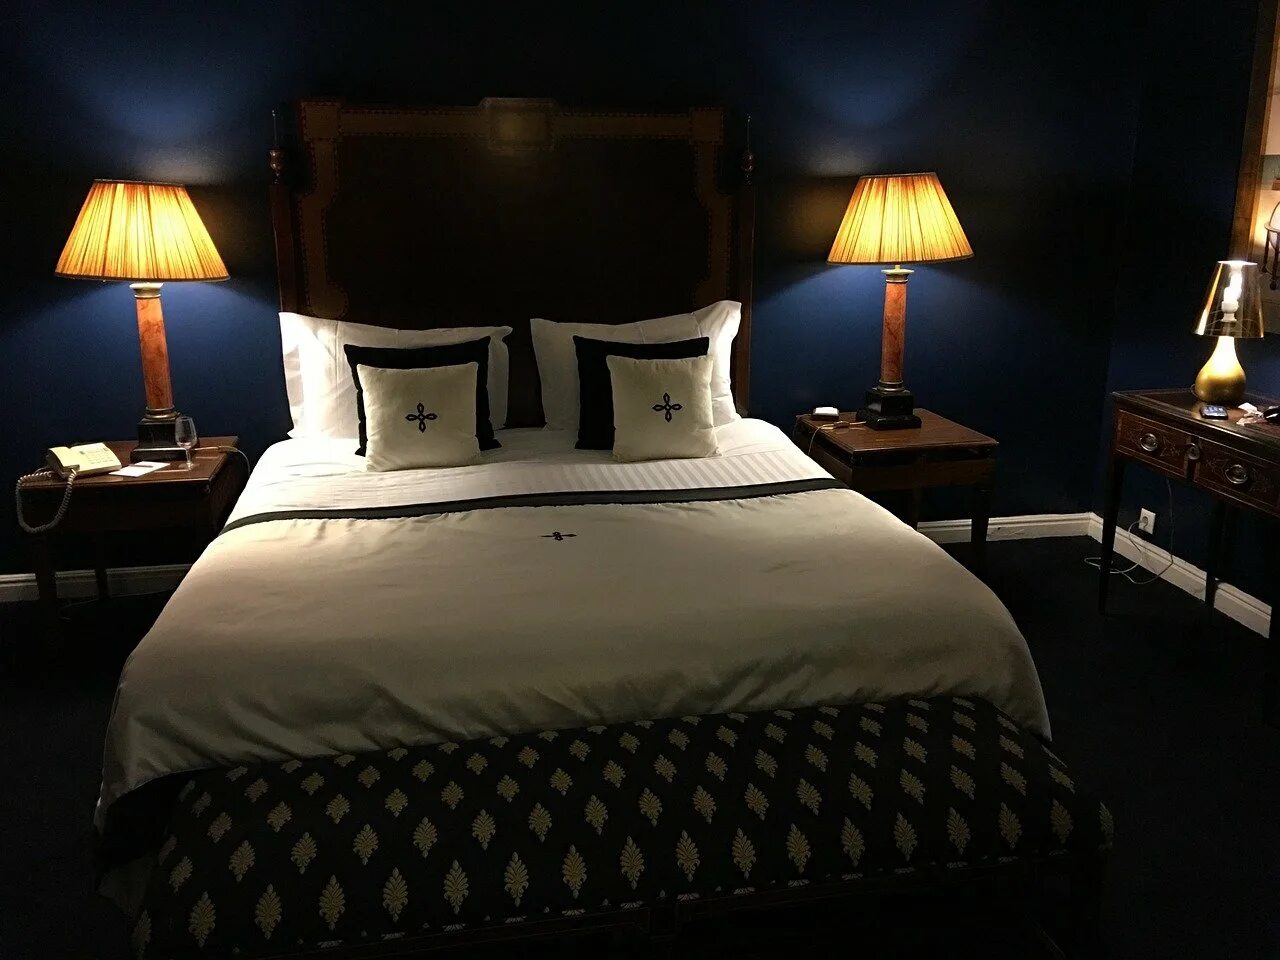 Постель в темноте. Кровать в отеле. Кровать ночью. Ночная спальня. Спальня в отеле.